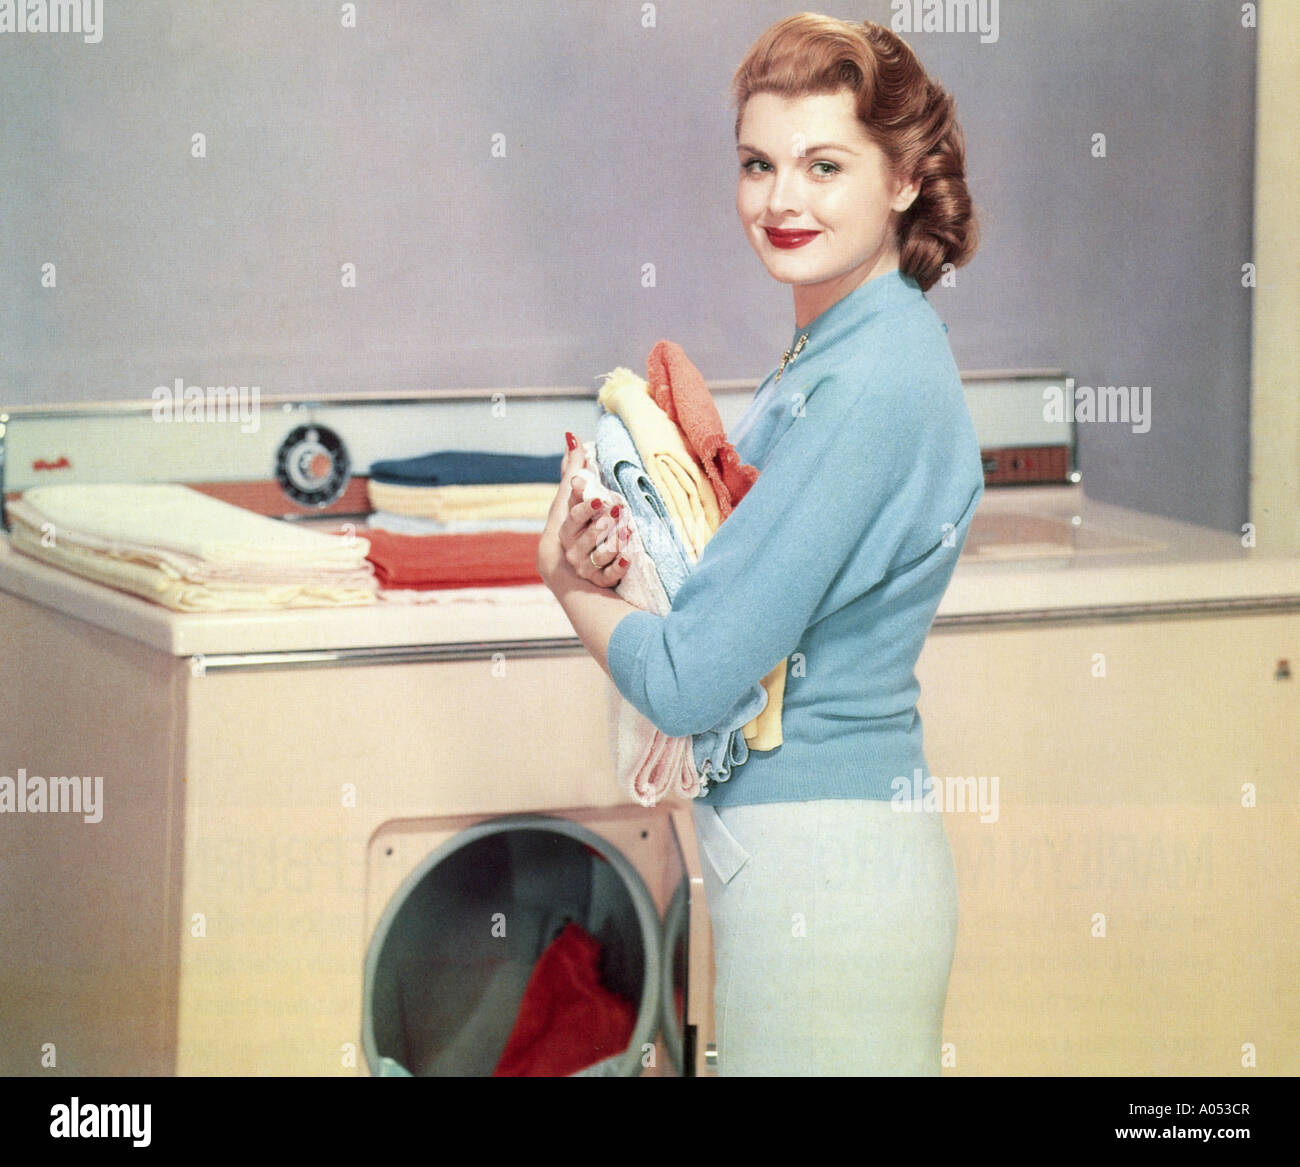 Waschmaschine in einem frühen 1960er-Jahren amerikanische Heimat  Stockfotografie - Alamy